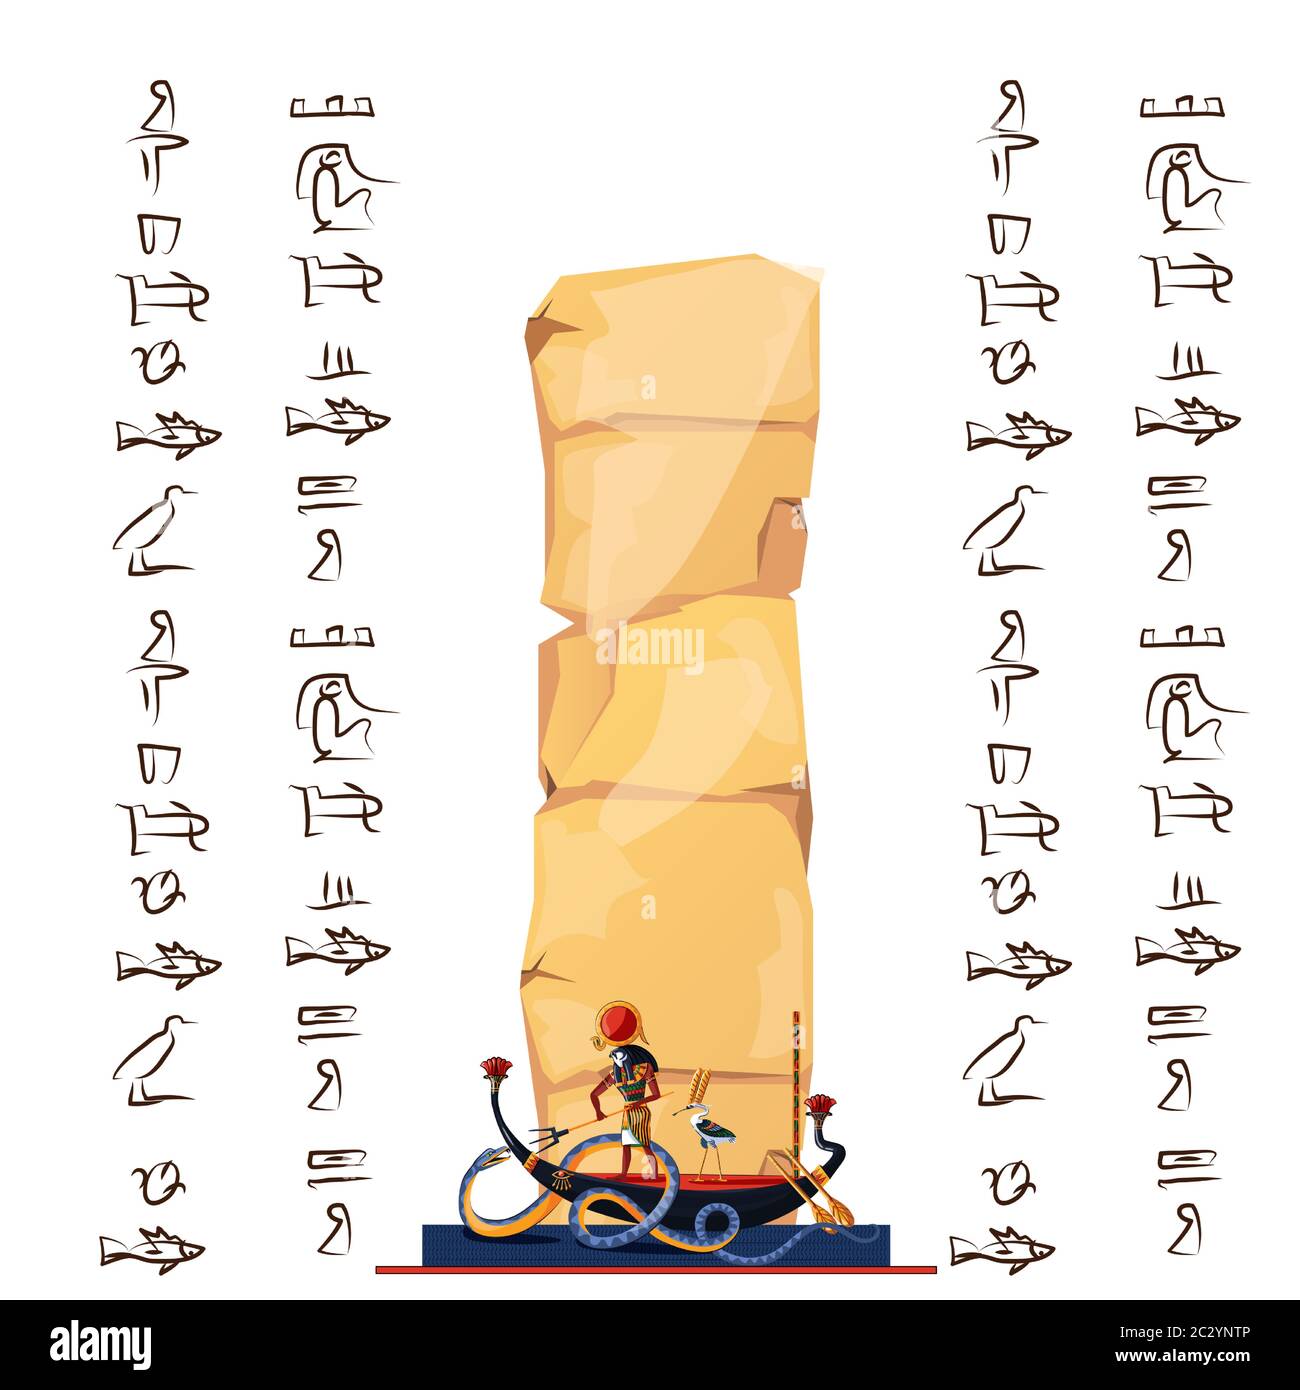 Vecteur papyrus de l'Égypte antique avec hiéroglyphes et symboles religieux de la culture égyptienne, Ra, Dieu du soleil de nuit voiles en bateau sur la rivière souterraine Illustration de Vecteur